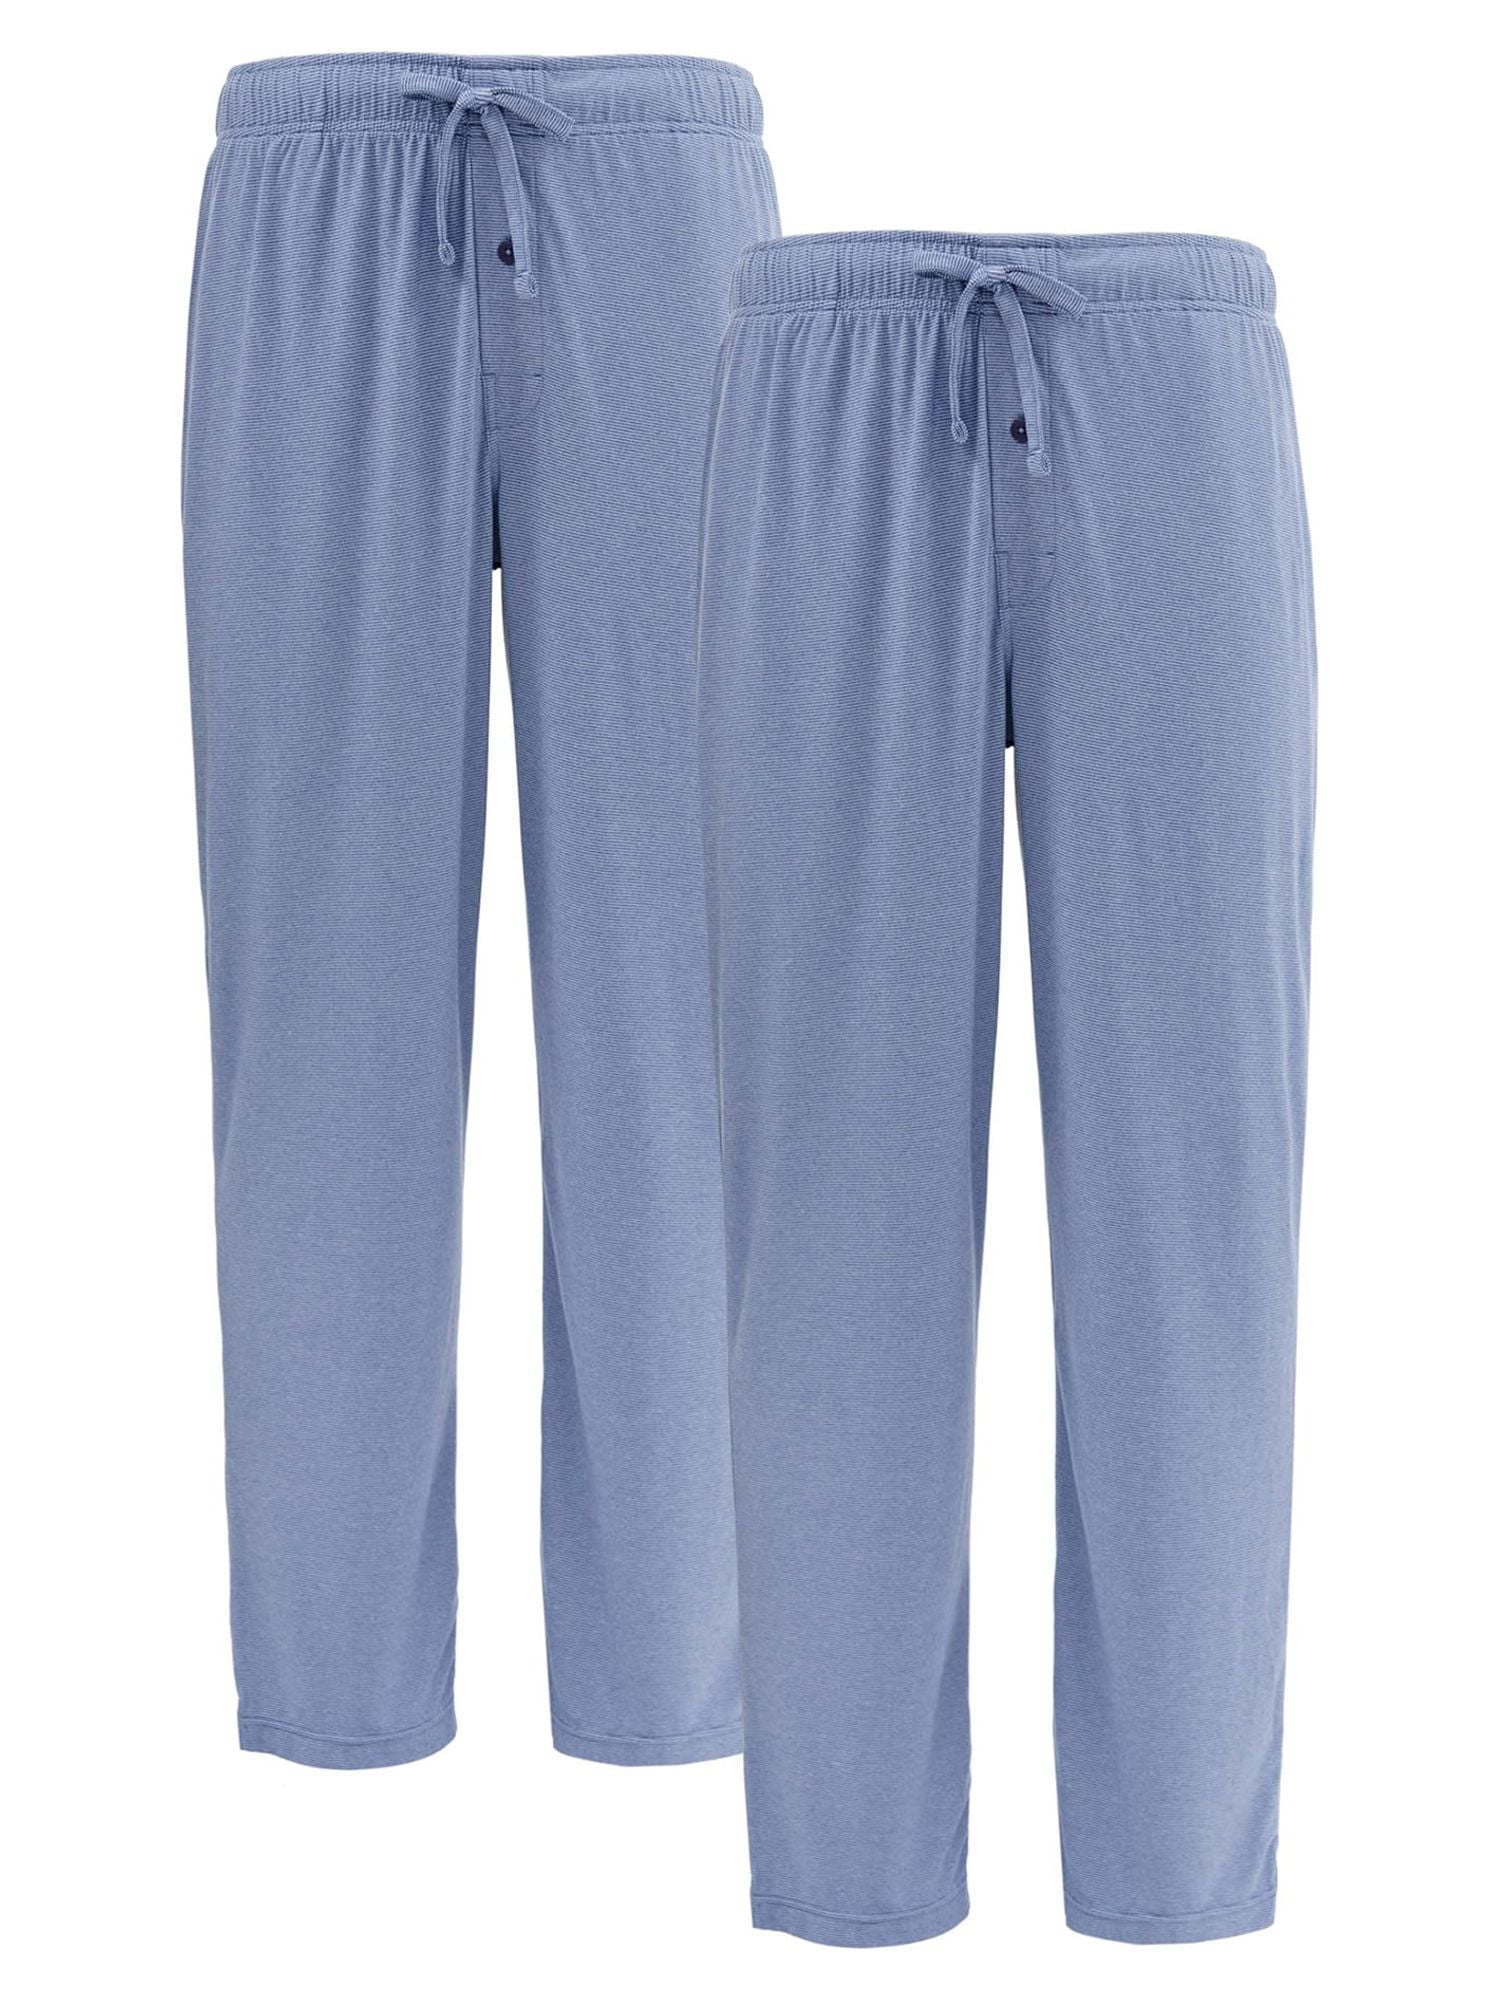 George Men's and Big Men's Feed Stripe Knit Sleep Pajama Pants, 2-Pack ...